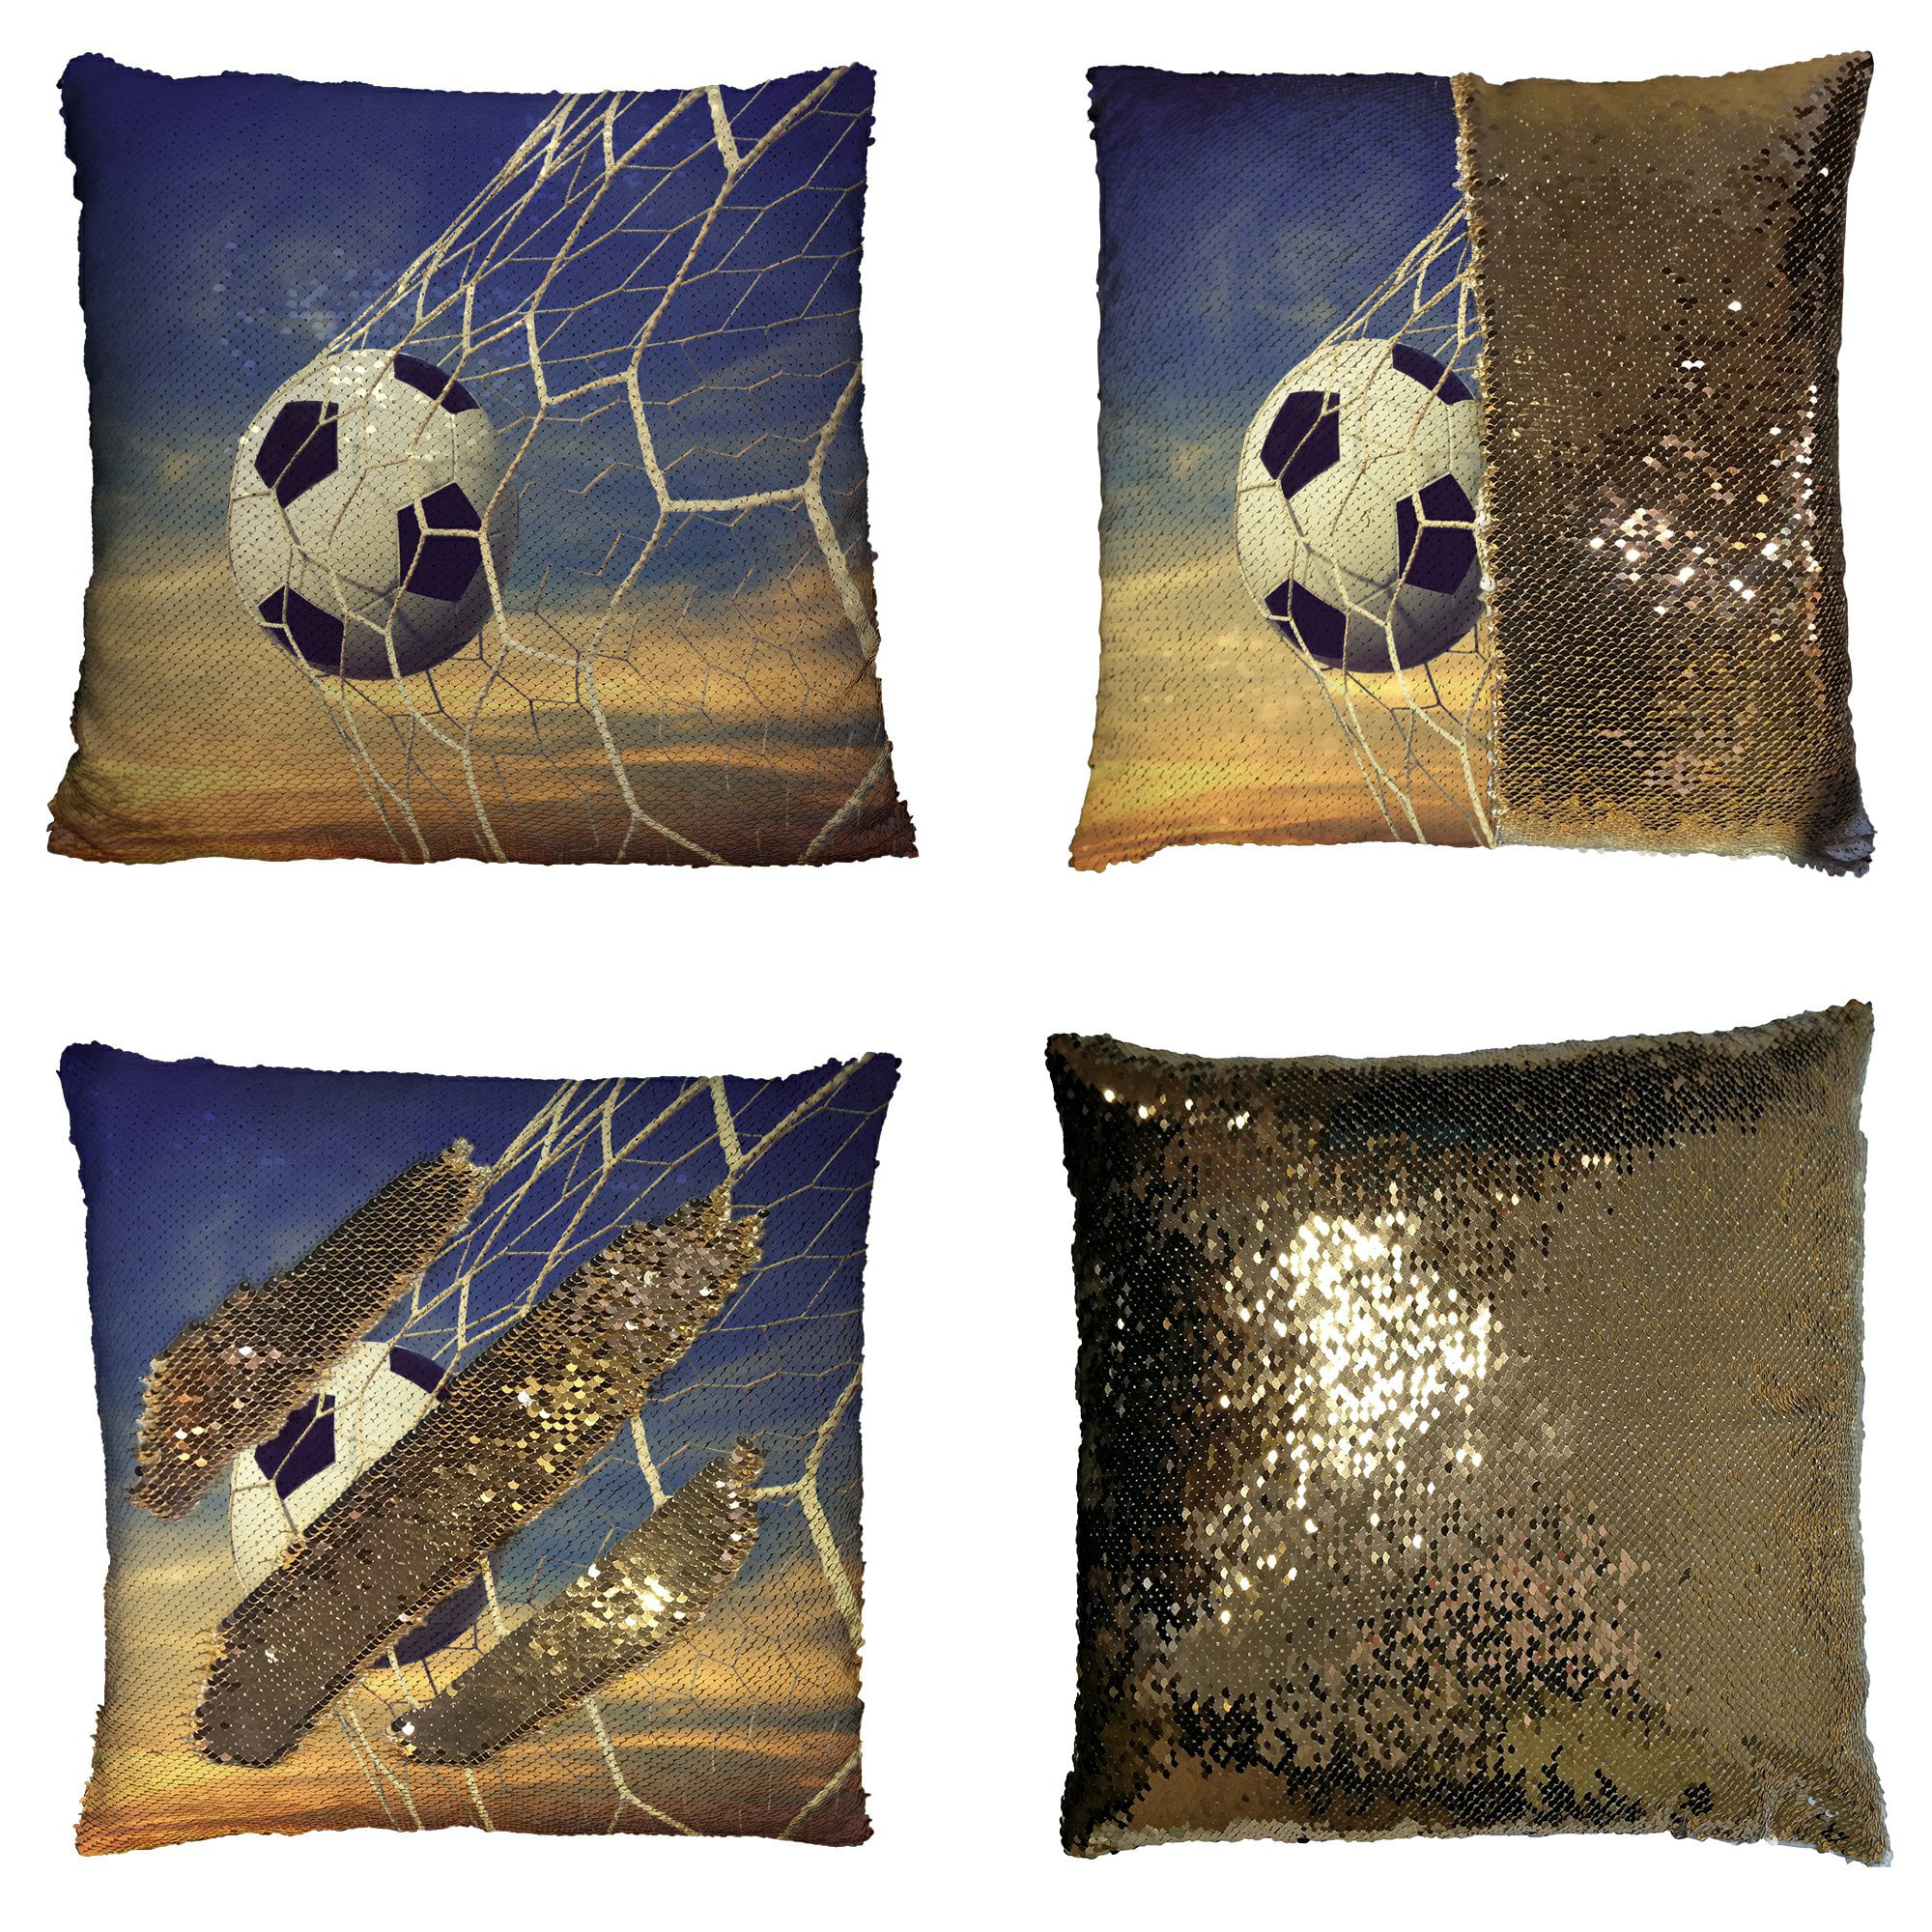 sequin soccer pillow